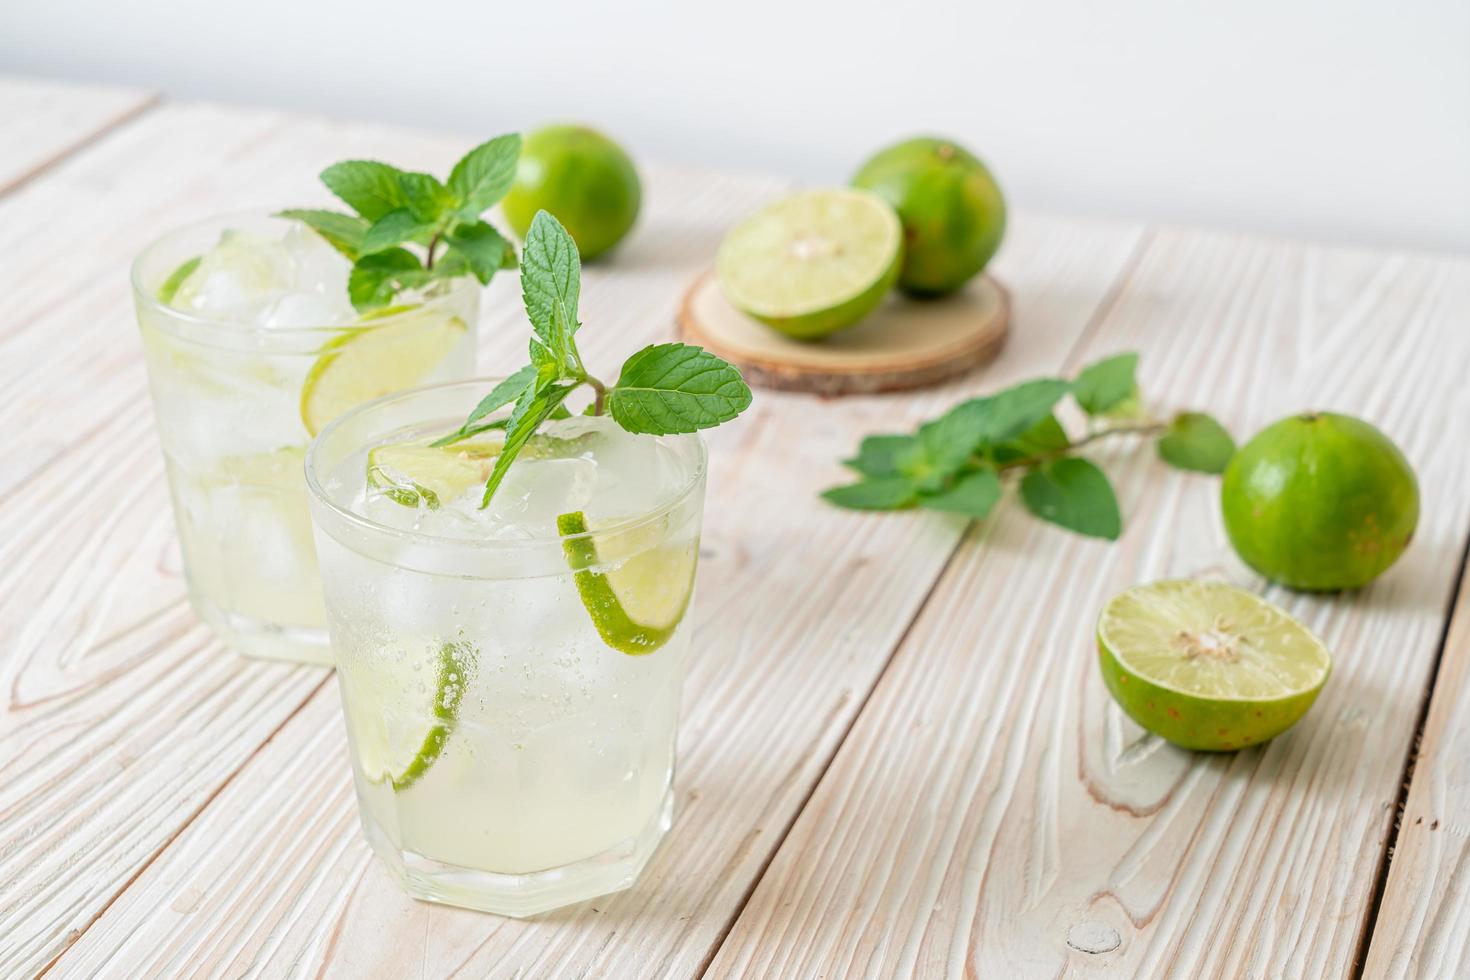 iced lime soda med mynta - uppfriskande drink foto